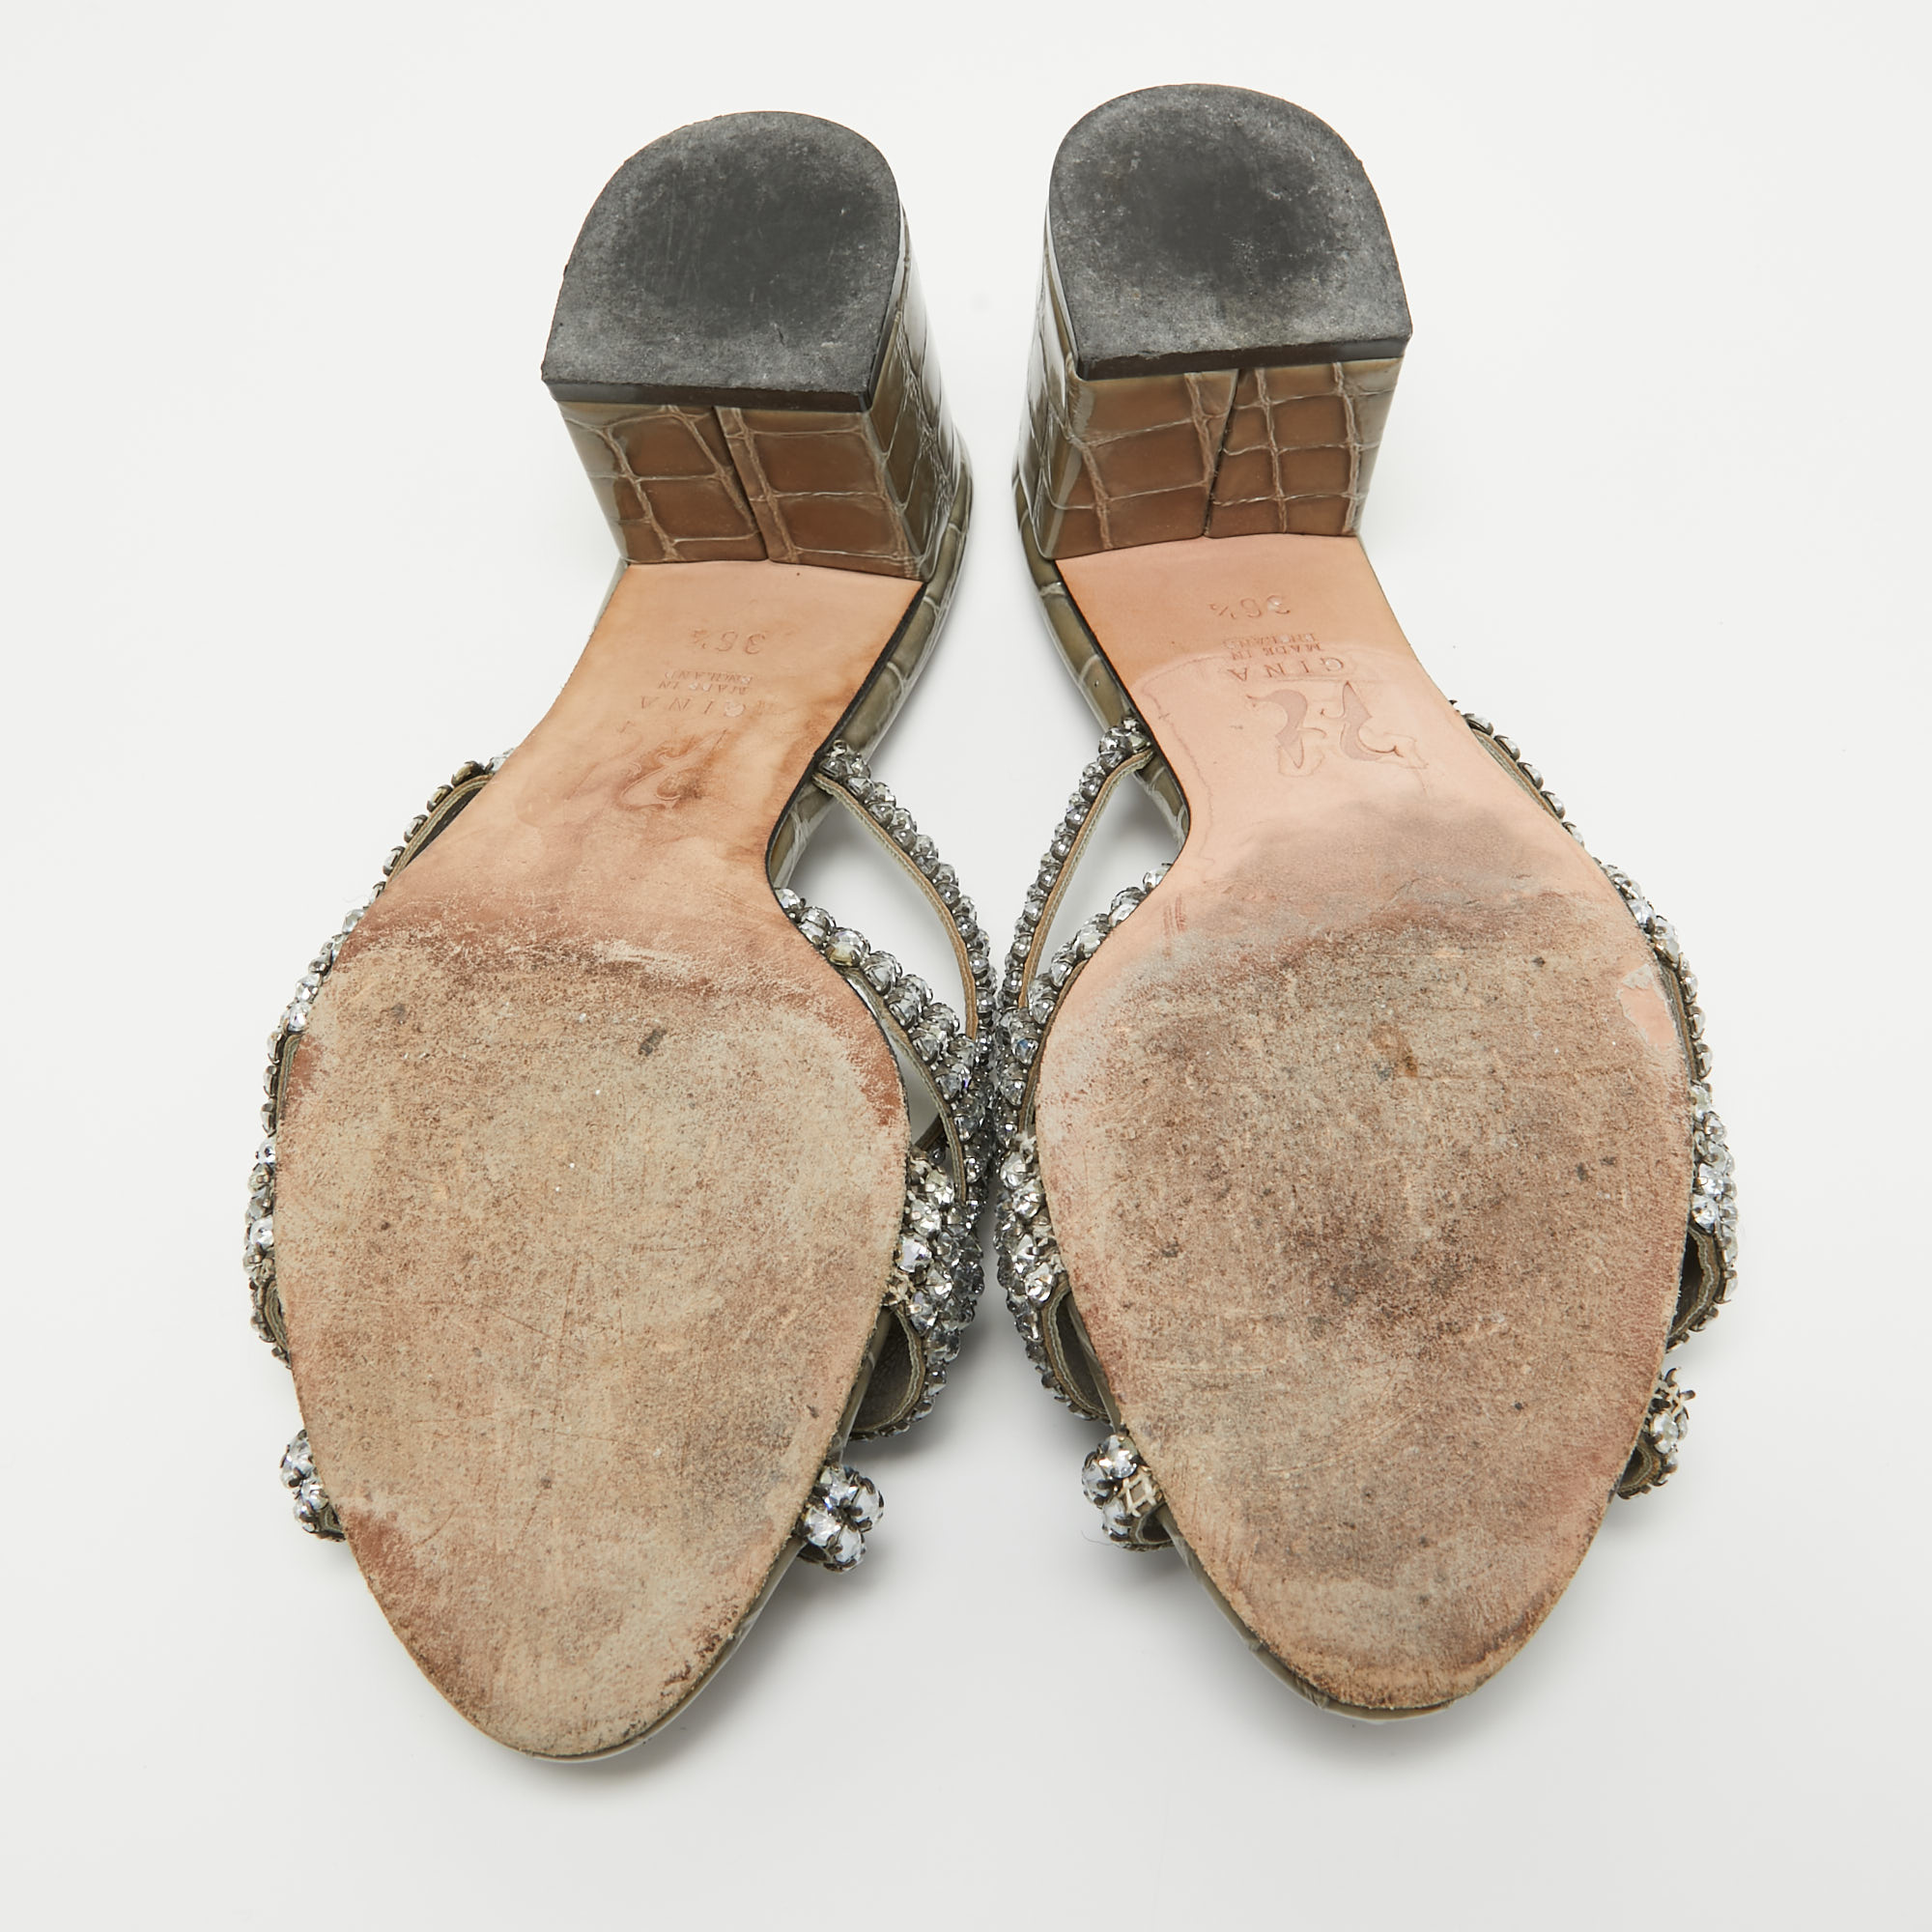 Gina Olive Green Crystal Embellished Leather Slide Sandals Size 36.5